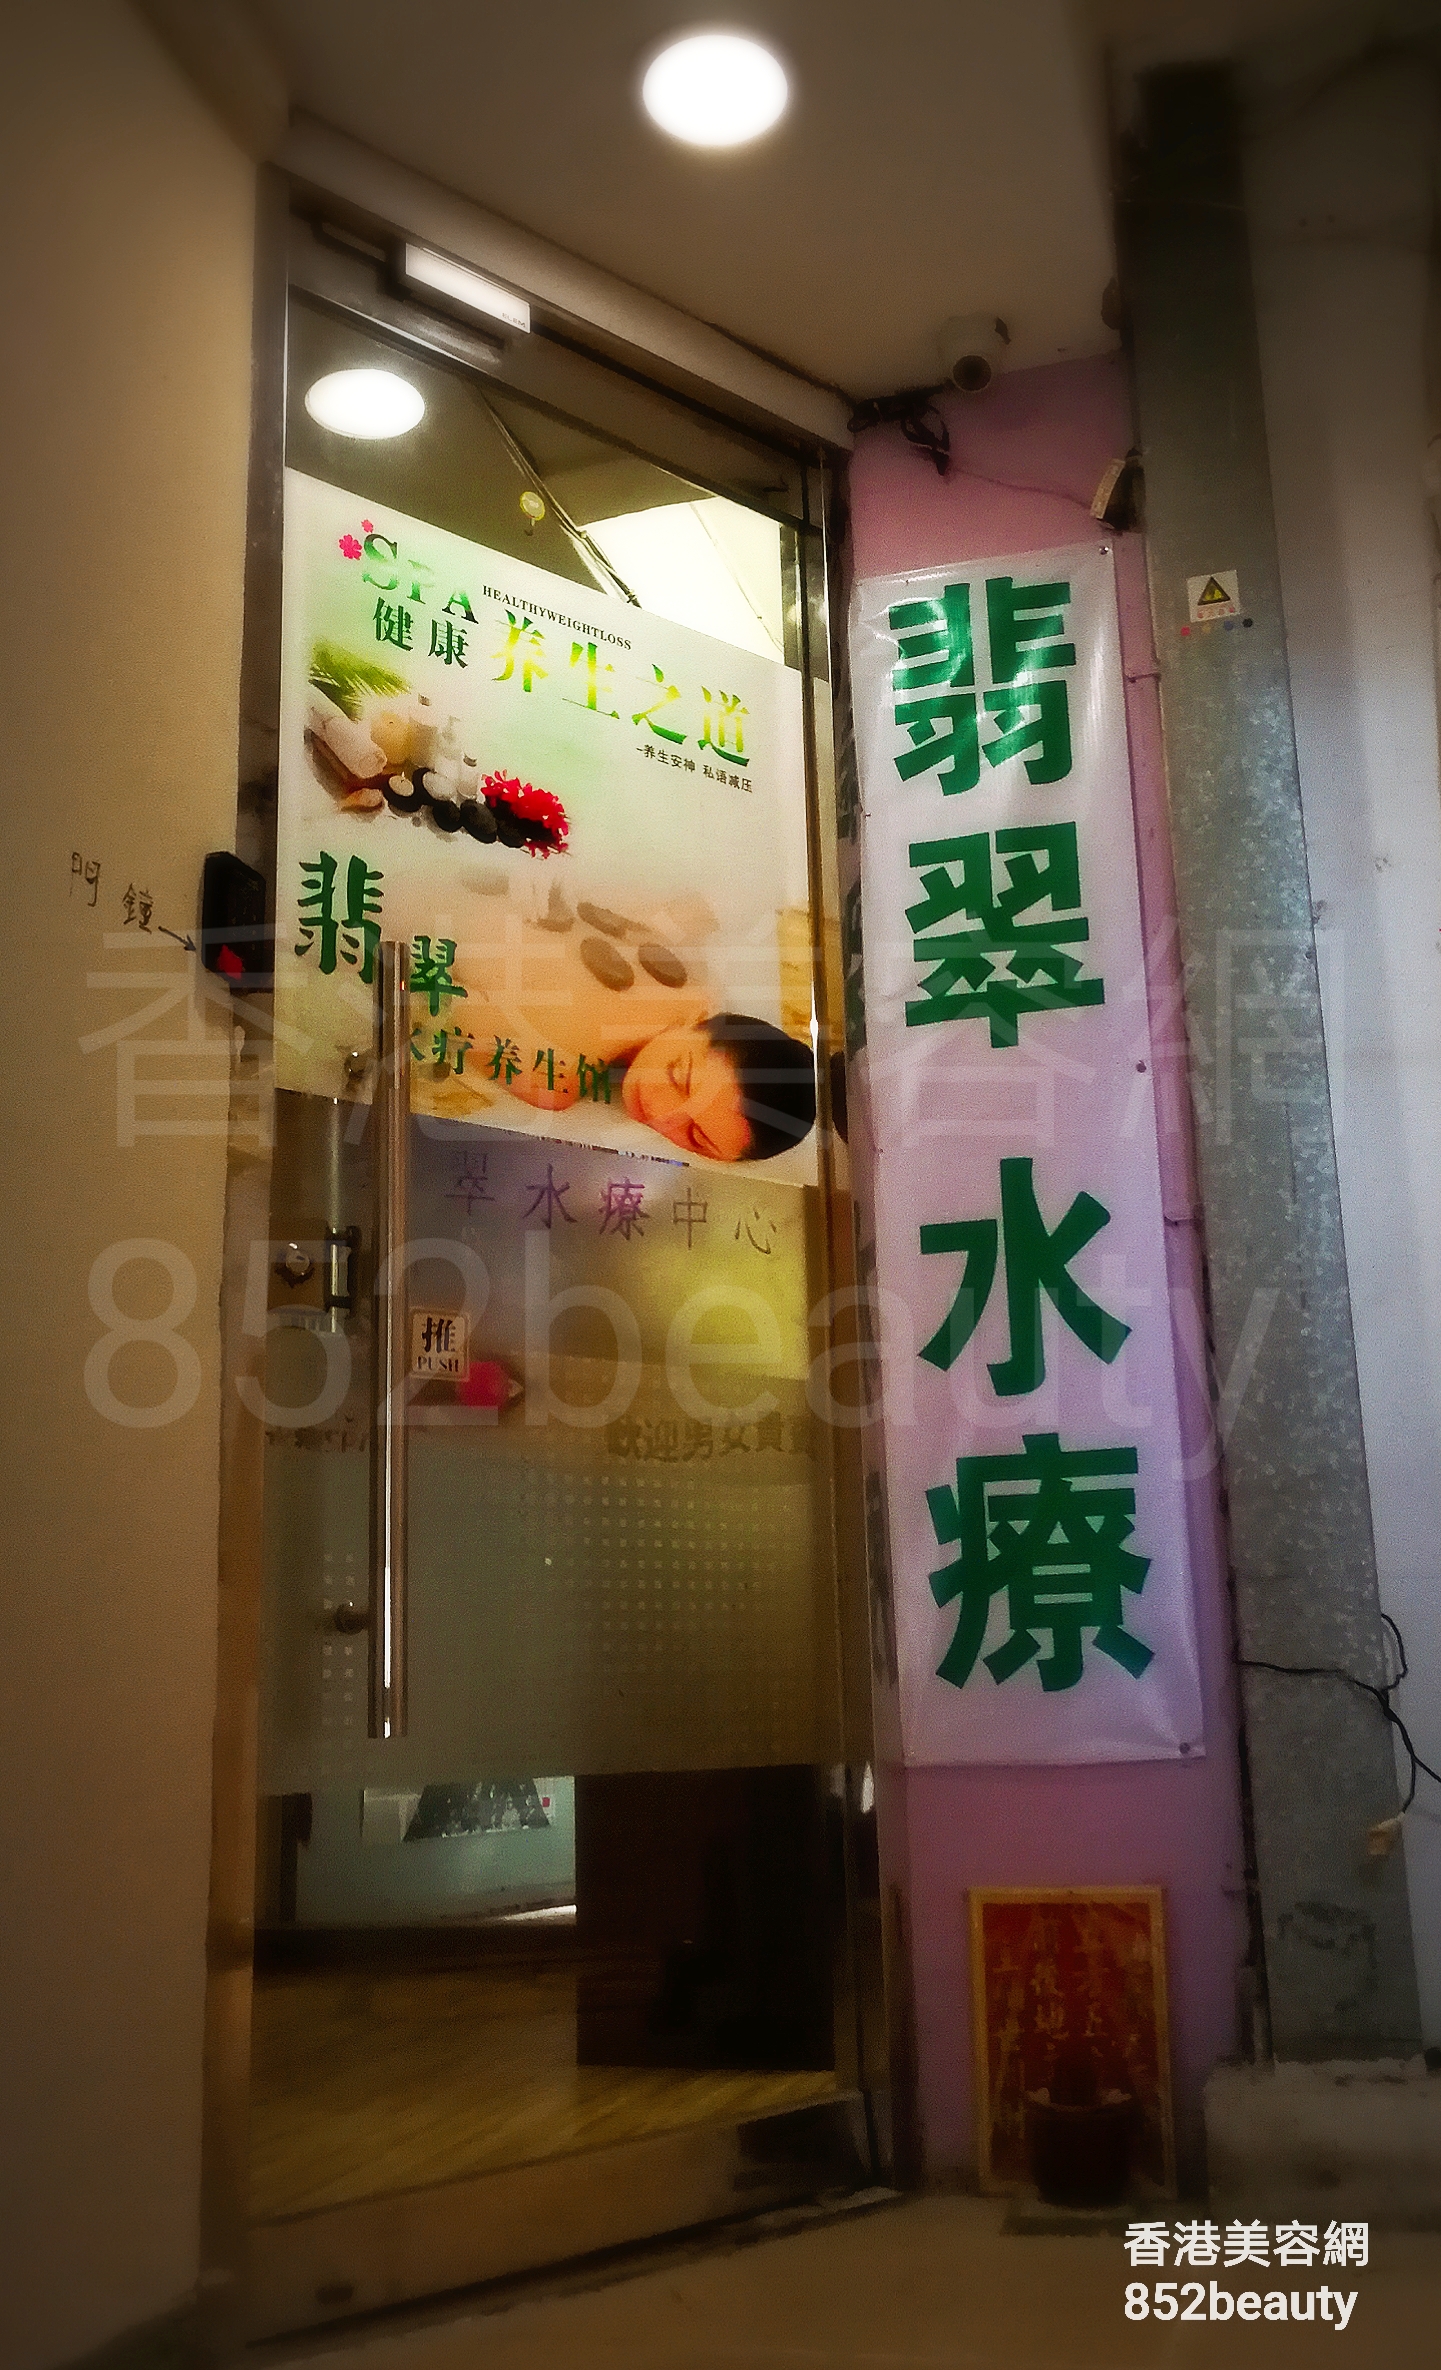 香港美容網 Hong Kong Beauty Salon 美容院 / 美容師: 翡翠水療